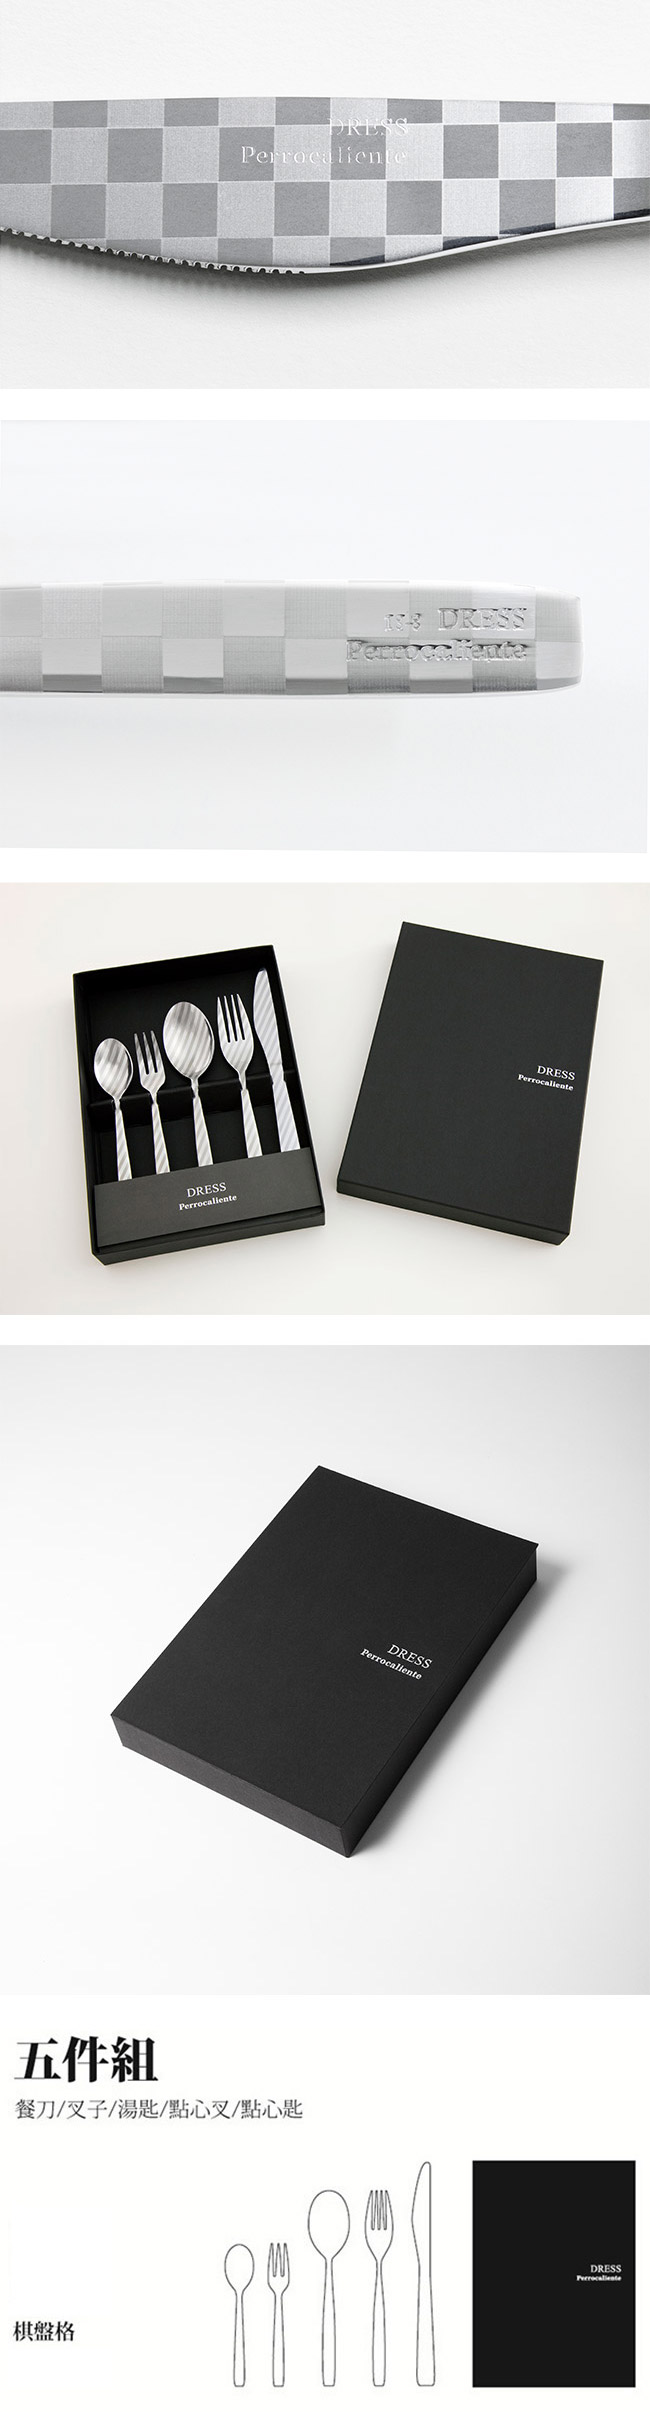 【4/23~4/29精選品牌9折優惠】Perrocaliente Dress Gift Set 銀色盒裝餐具組 五件組 棋盤格